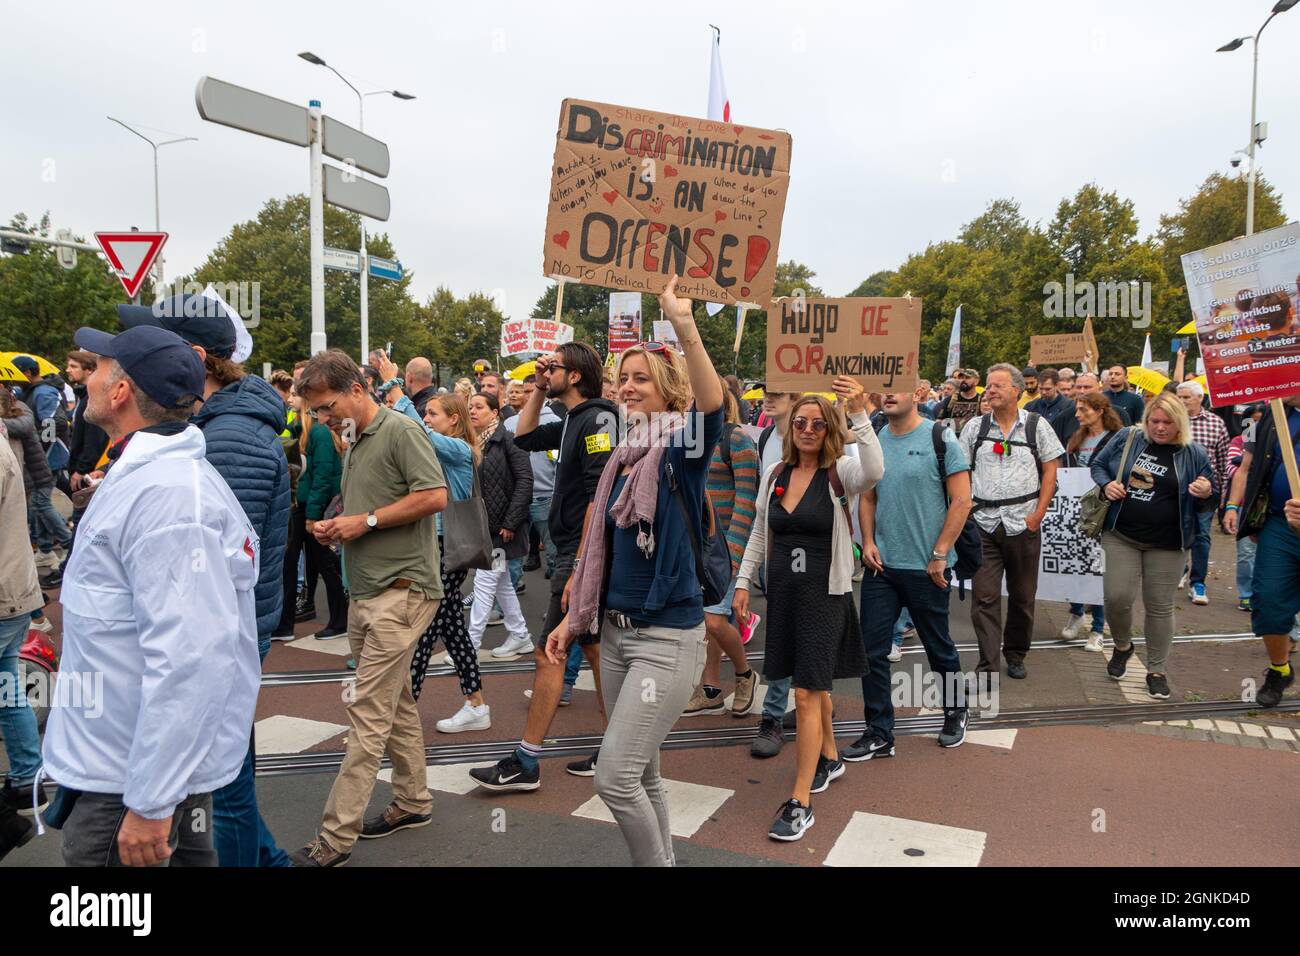 Den Haag, Niederlande - 25 2021. September: Demonstration in Den Haag, Niederlande gegen die Zwangsverordnungen mit Schildern und Spruchbändern Stockfoto